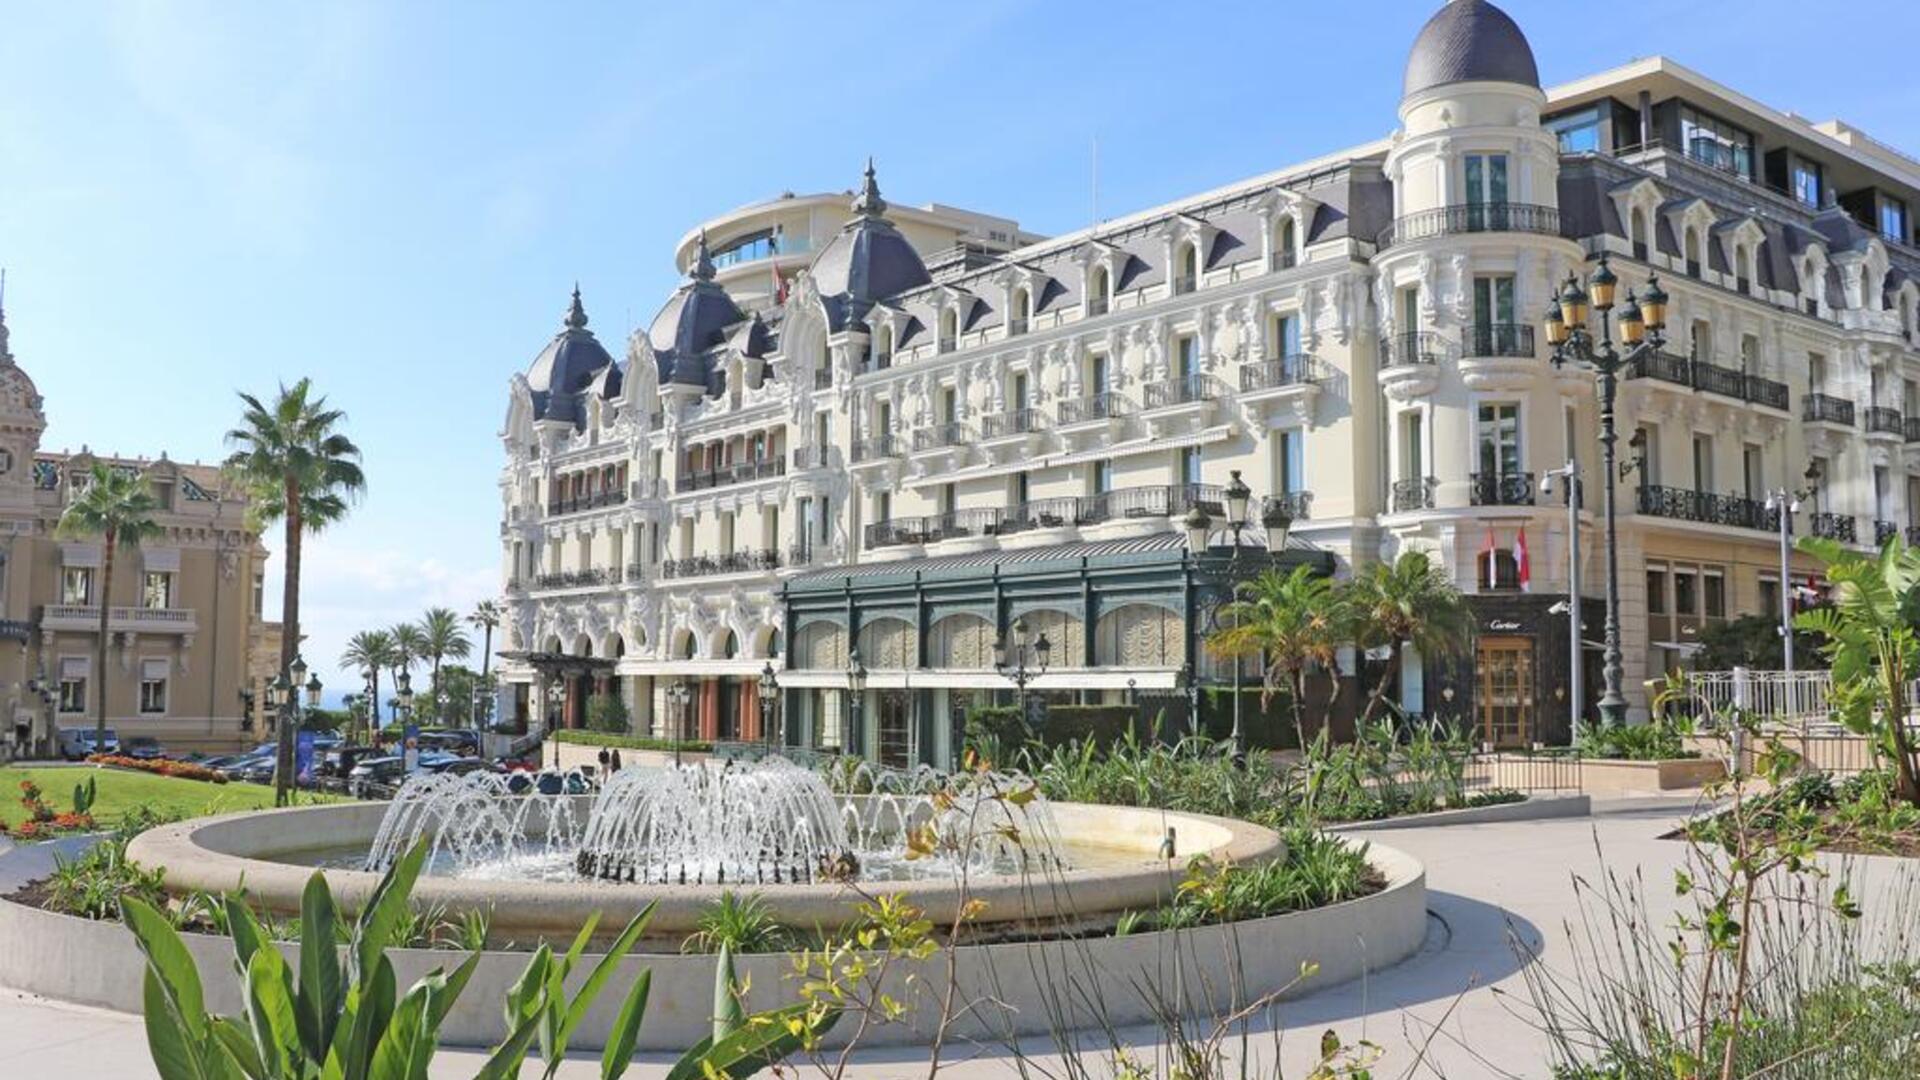 Hotel Paris - a hotel in Monte-Carlo - Monaco | La Guida Gran Turismo